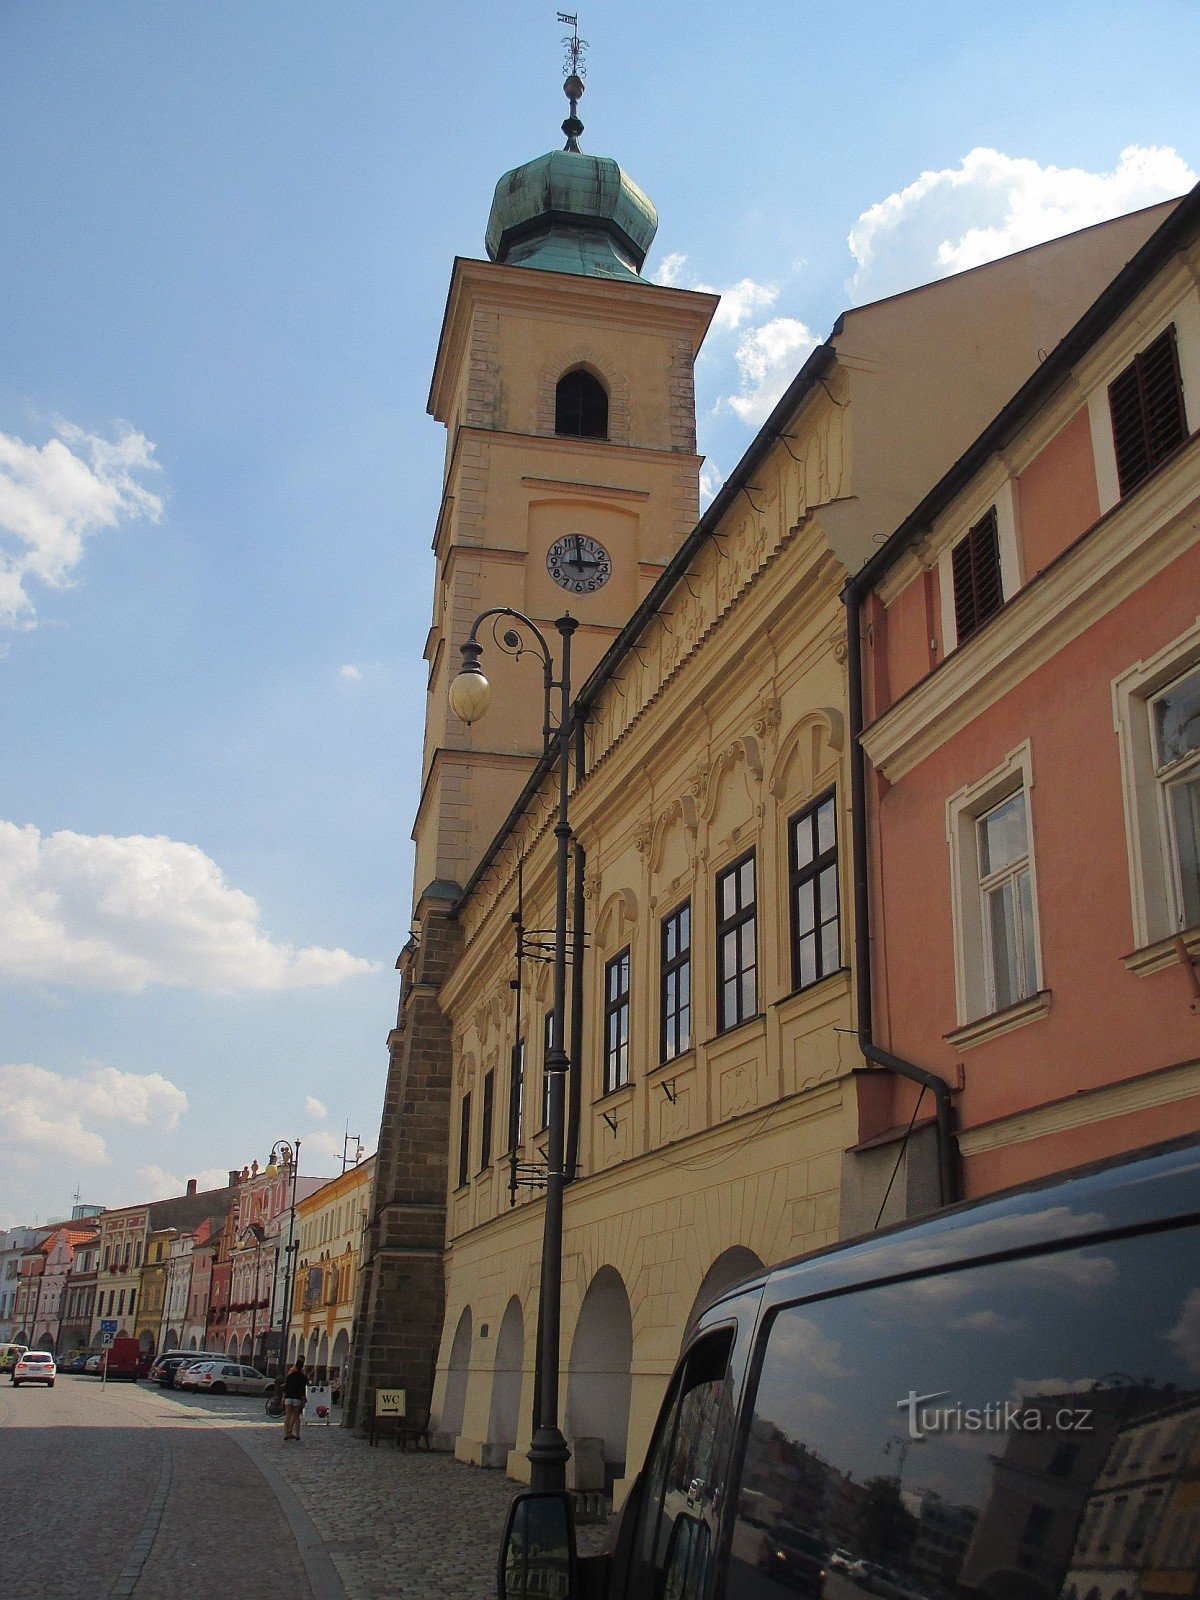 Litomyšl - Smetana square and castle